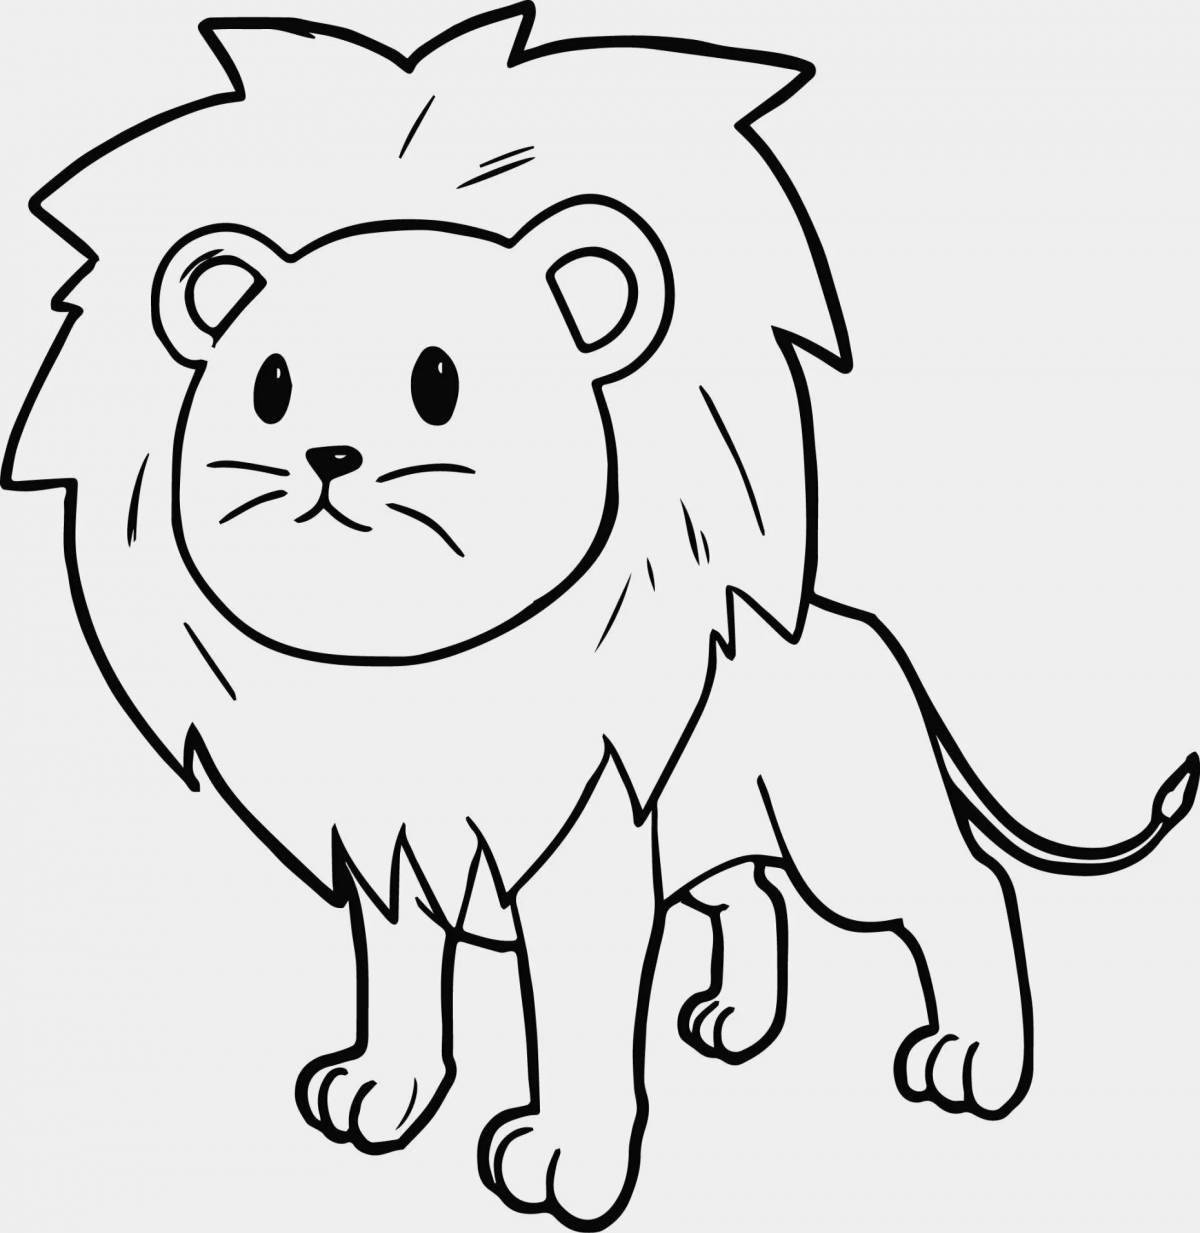 Impressive lion coloring page